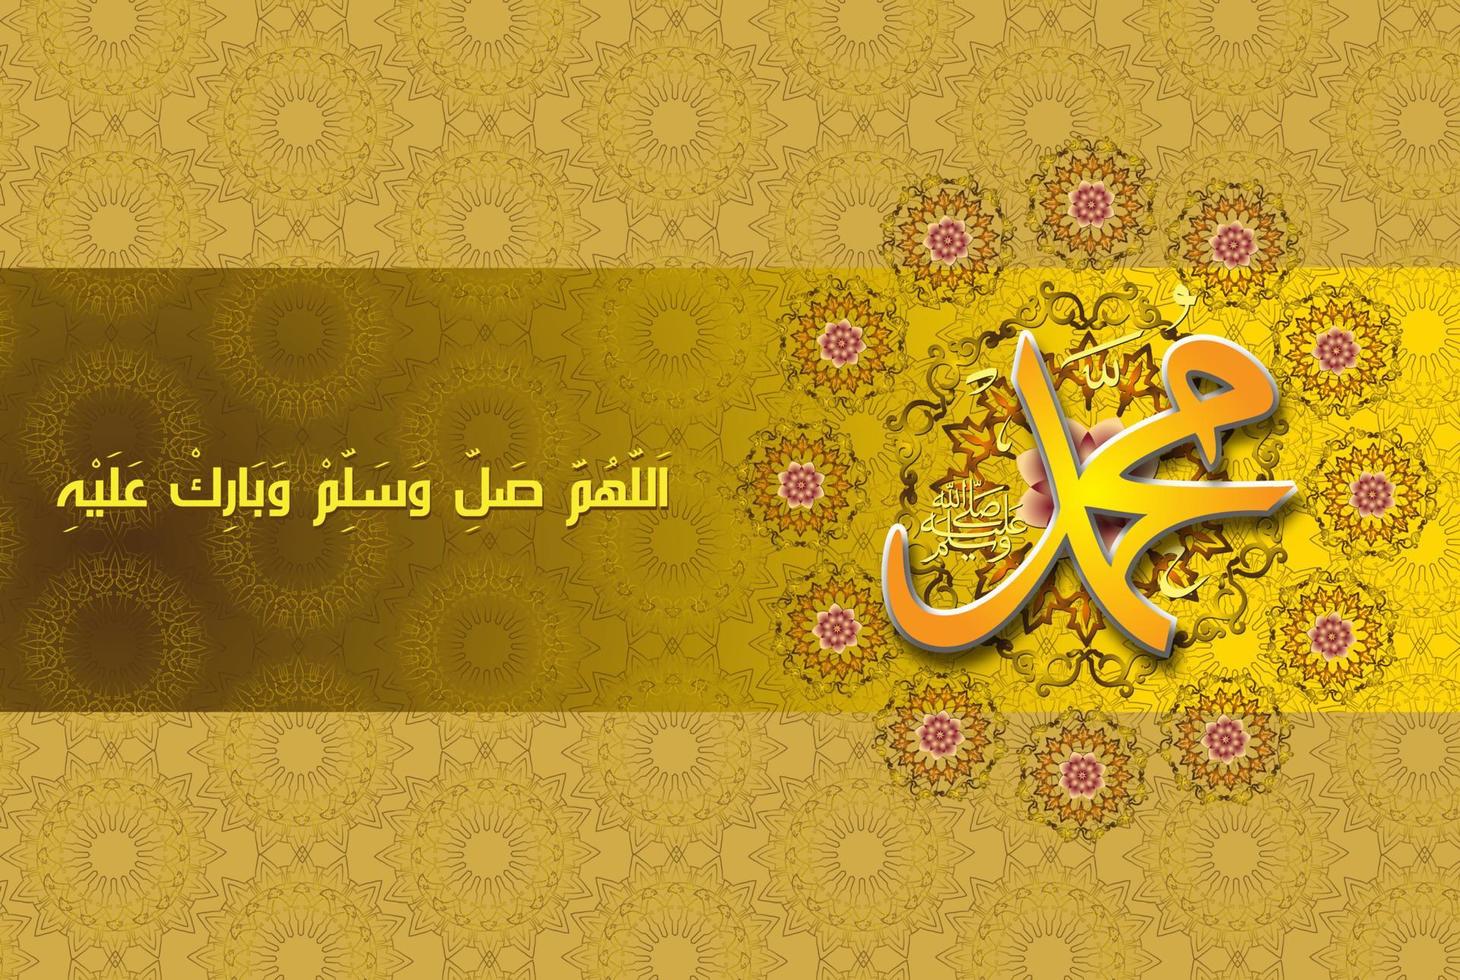 Arabisches islamisches Kalligrafie-Design Mawlid al-nabi al-sharif Grußkarte, übersetzen Geburt des Propheten. islamischer ornamenthintergrund. Vektor-Illustration vektor